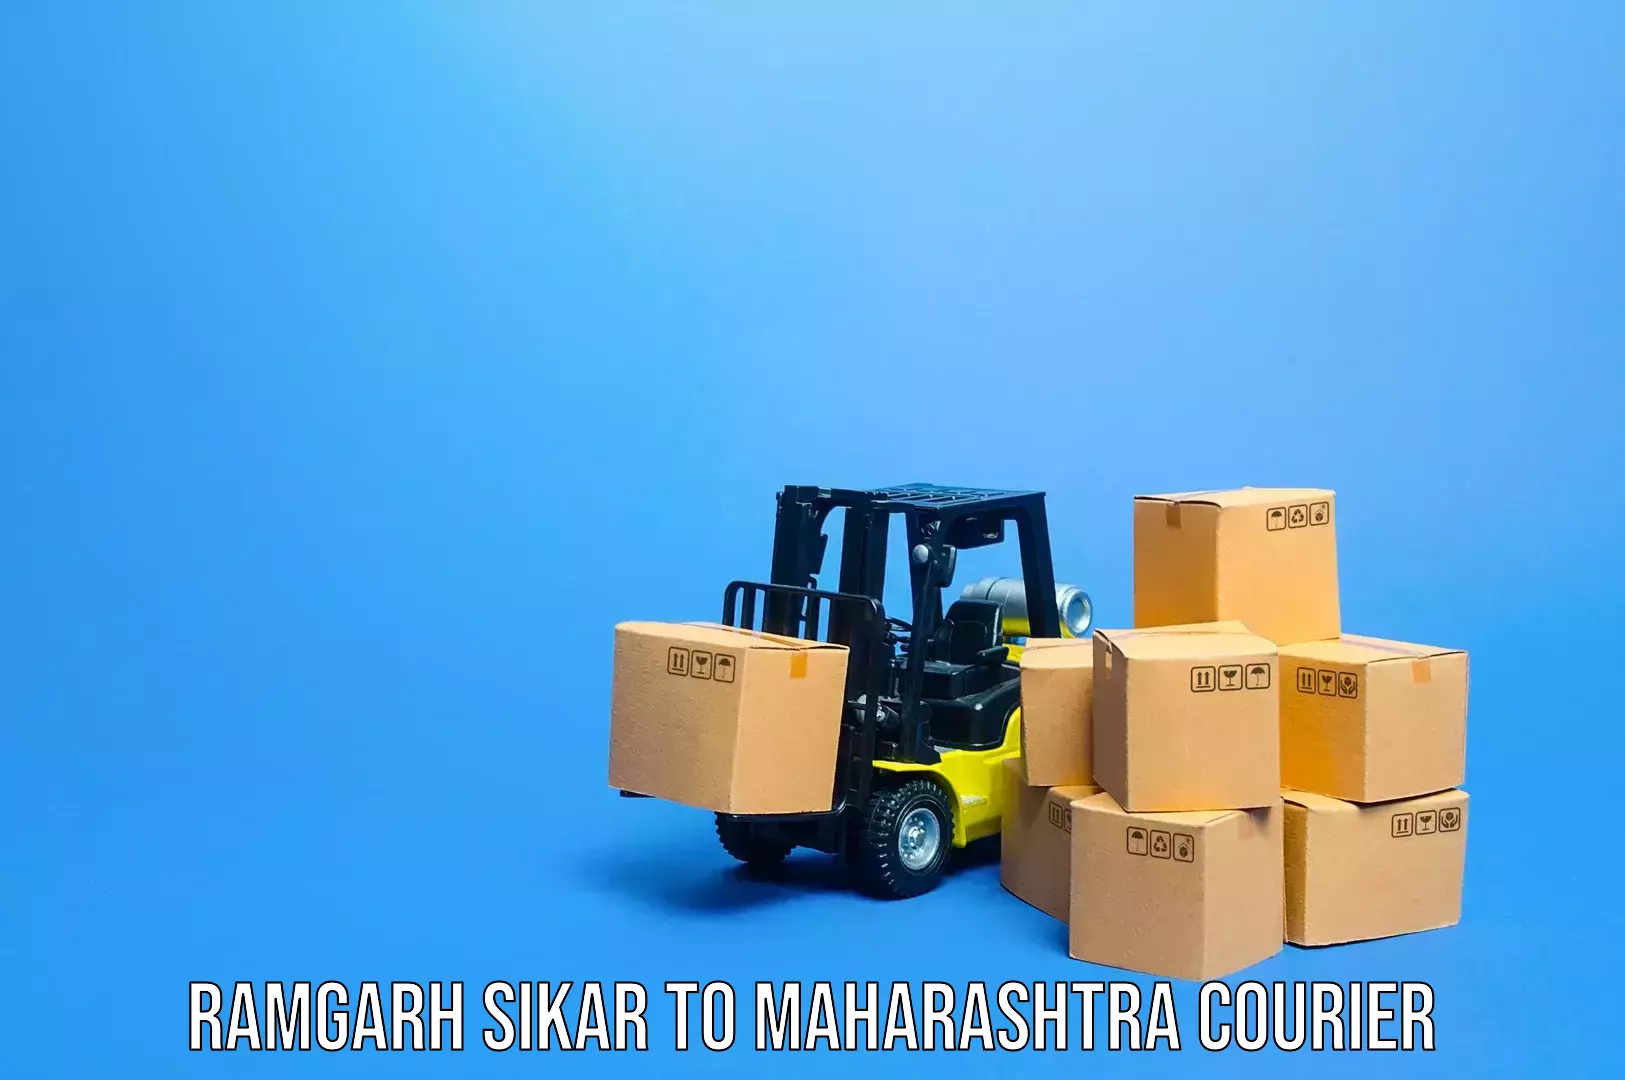 Baggage shipping calculator in Ramgarh Sikar to Maharashtra